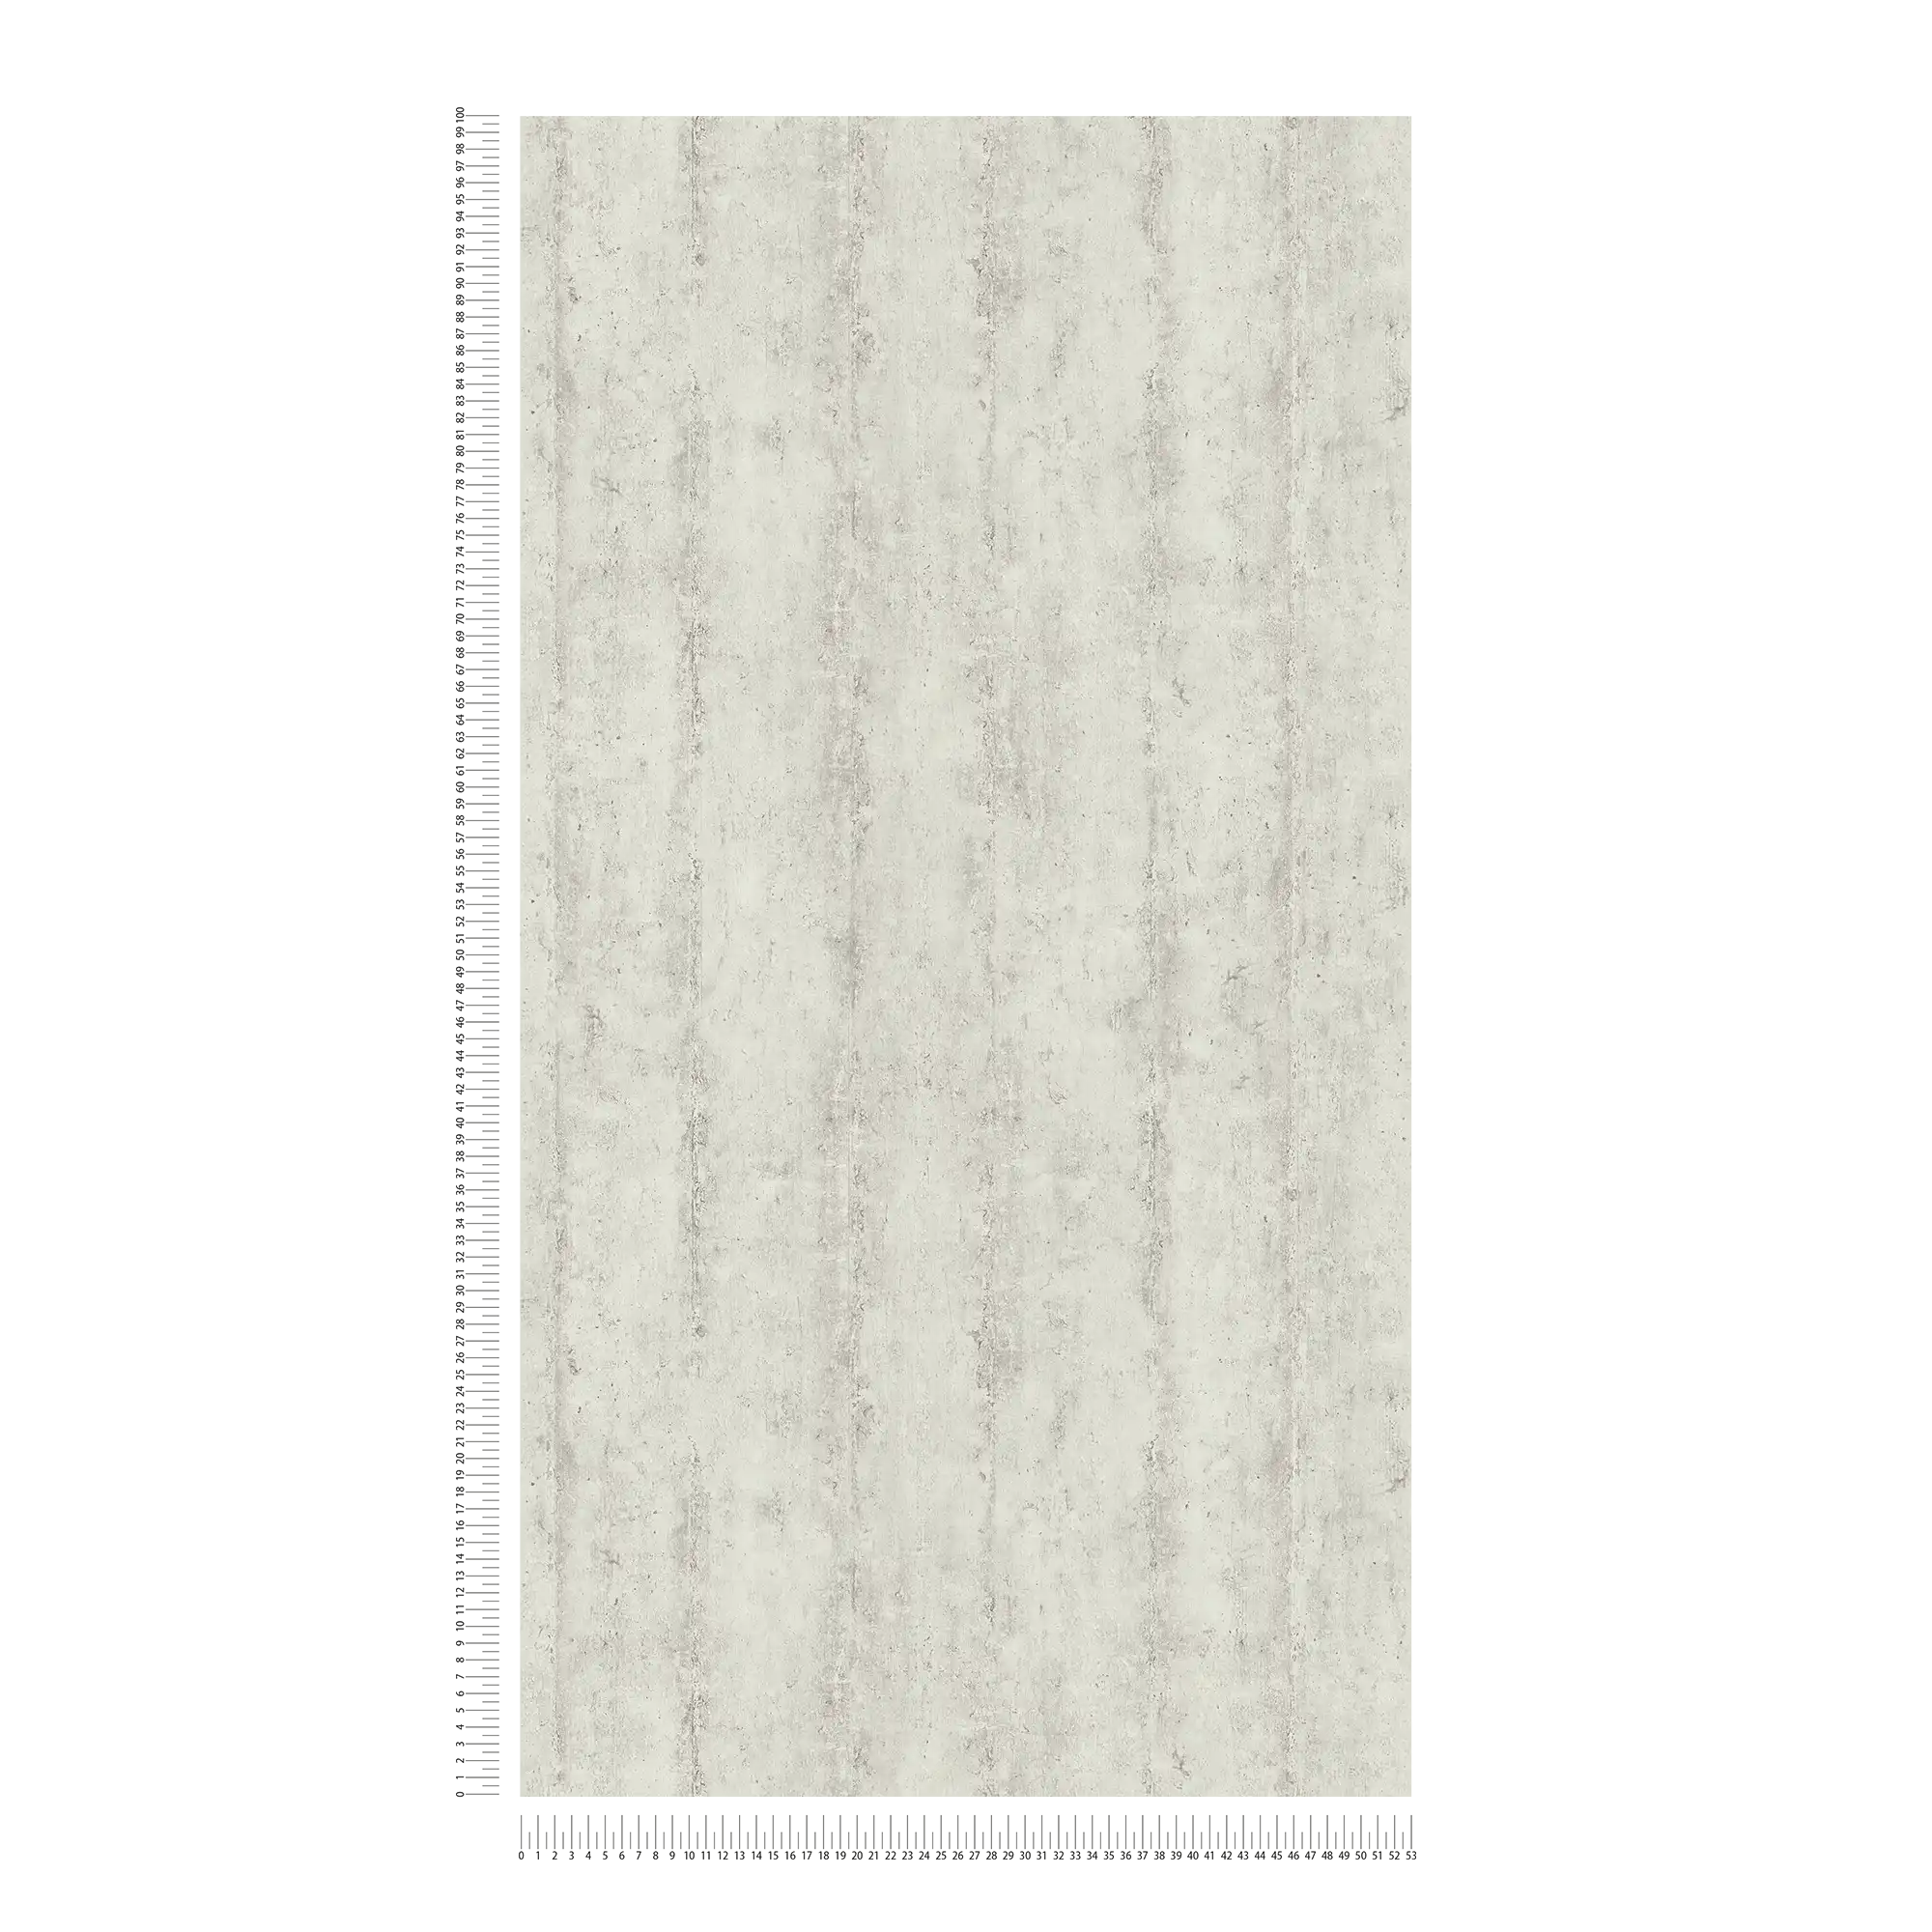             Vliesbehang met betonlook streeppatroon - beige, grijs
        